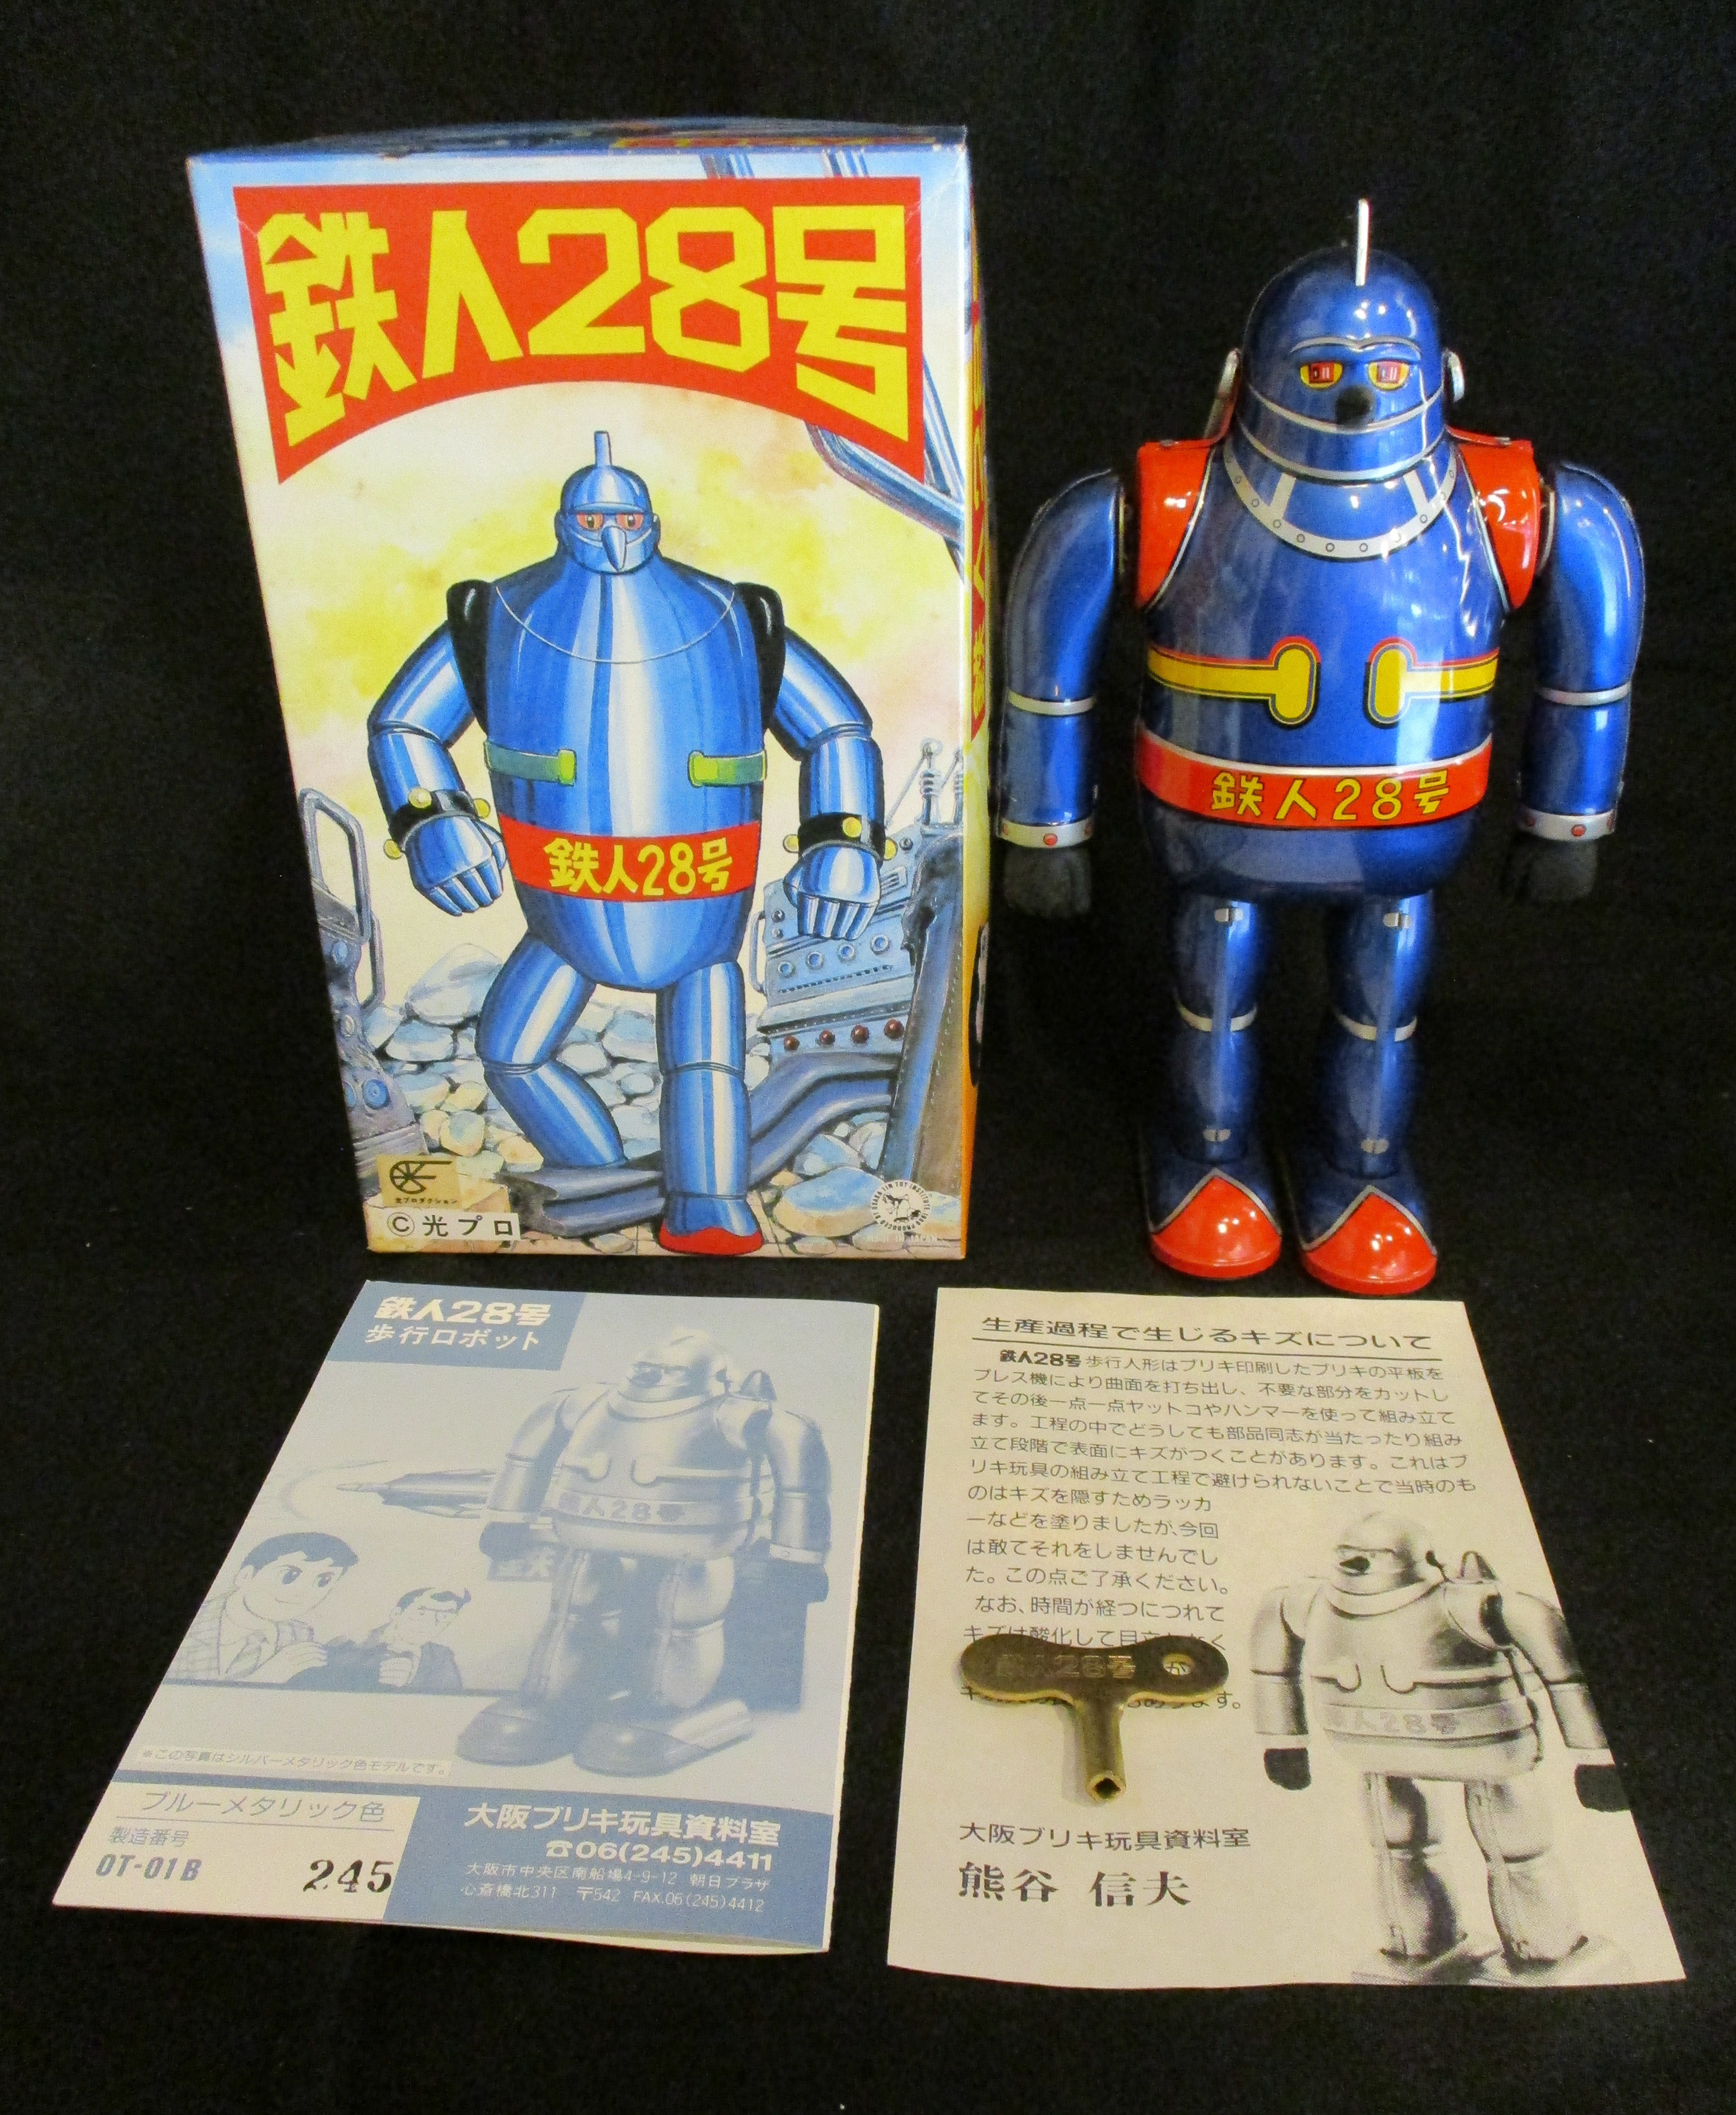 耐熱 二層 足あとぐらす (M) 希少 鉄人28号 NO.1 大阪ブリキ玩具 1989